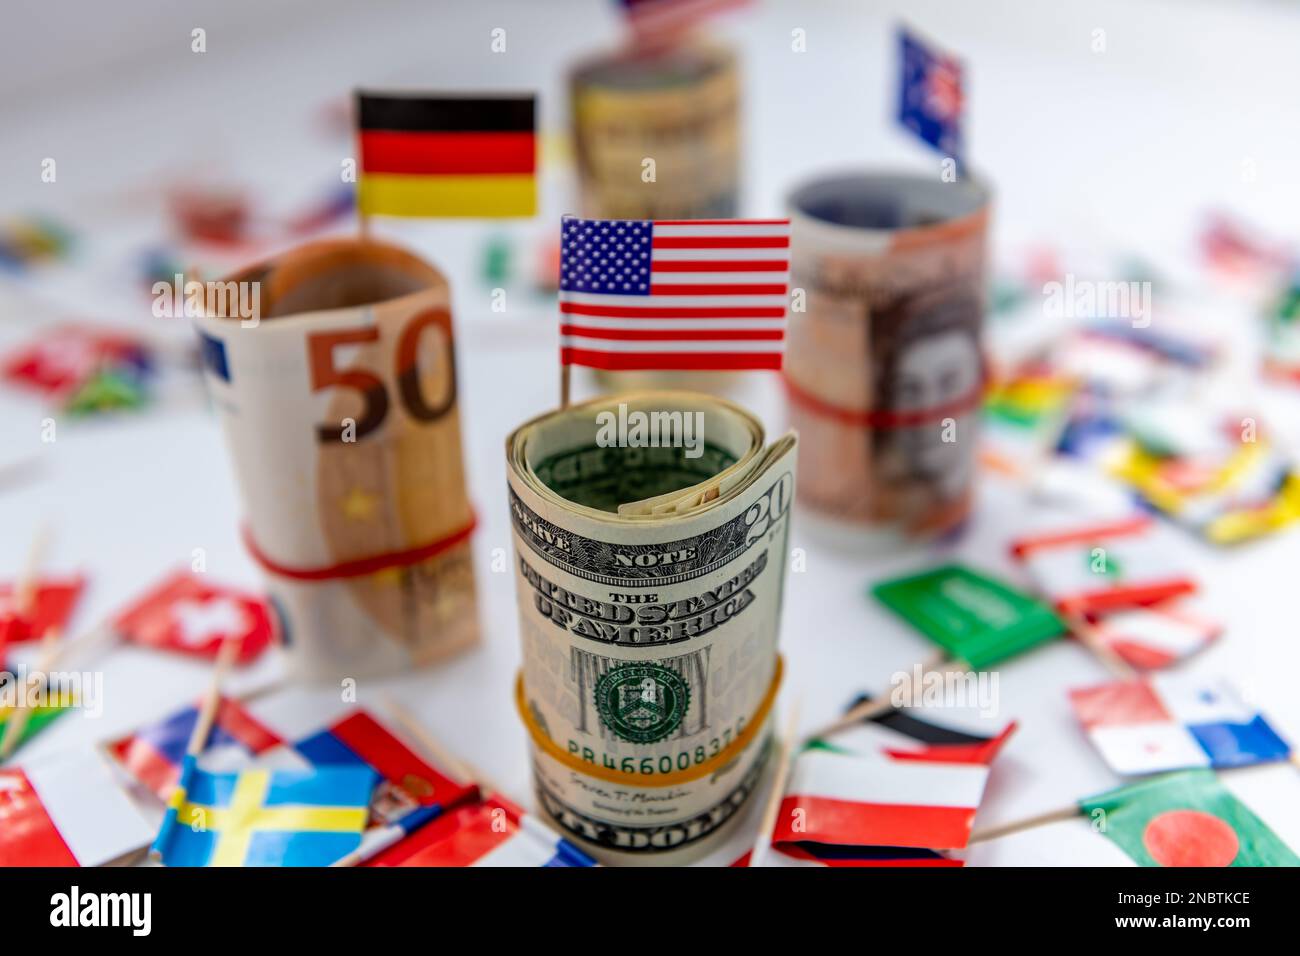 Pacchetti rotolati delle valute principali e bandiere del paese con il dollaro degli Stati Uniti e la bandiera americana davanti. Concetto di egemonia del dollaro. Foto Stock